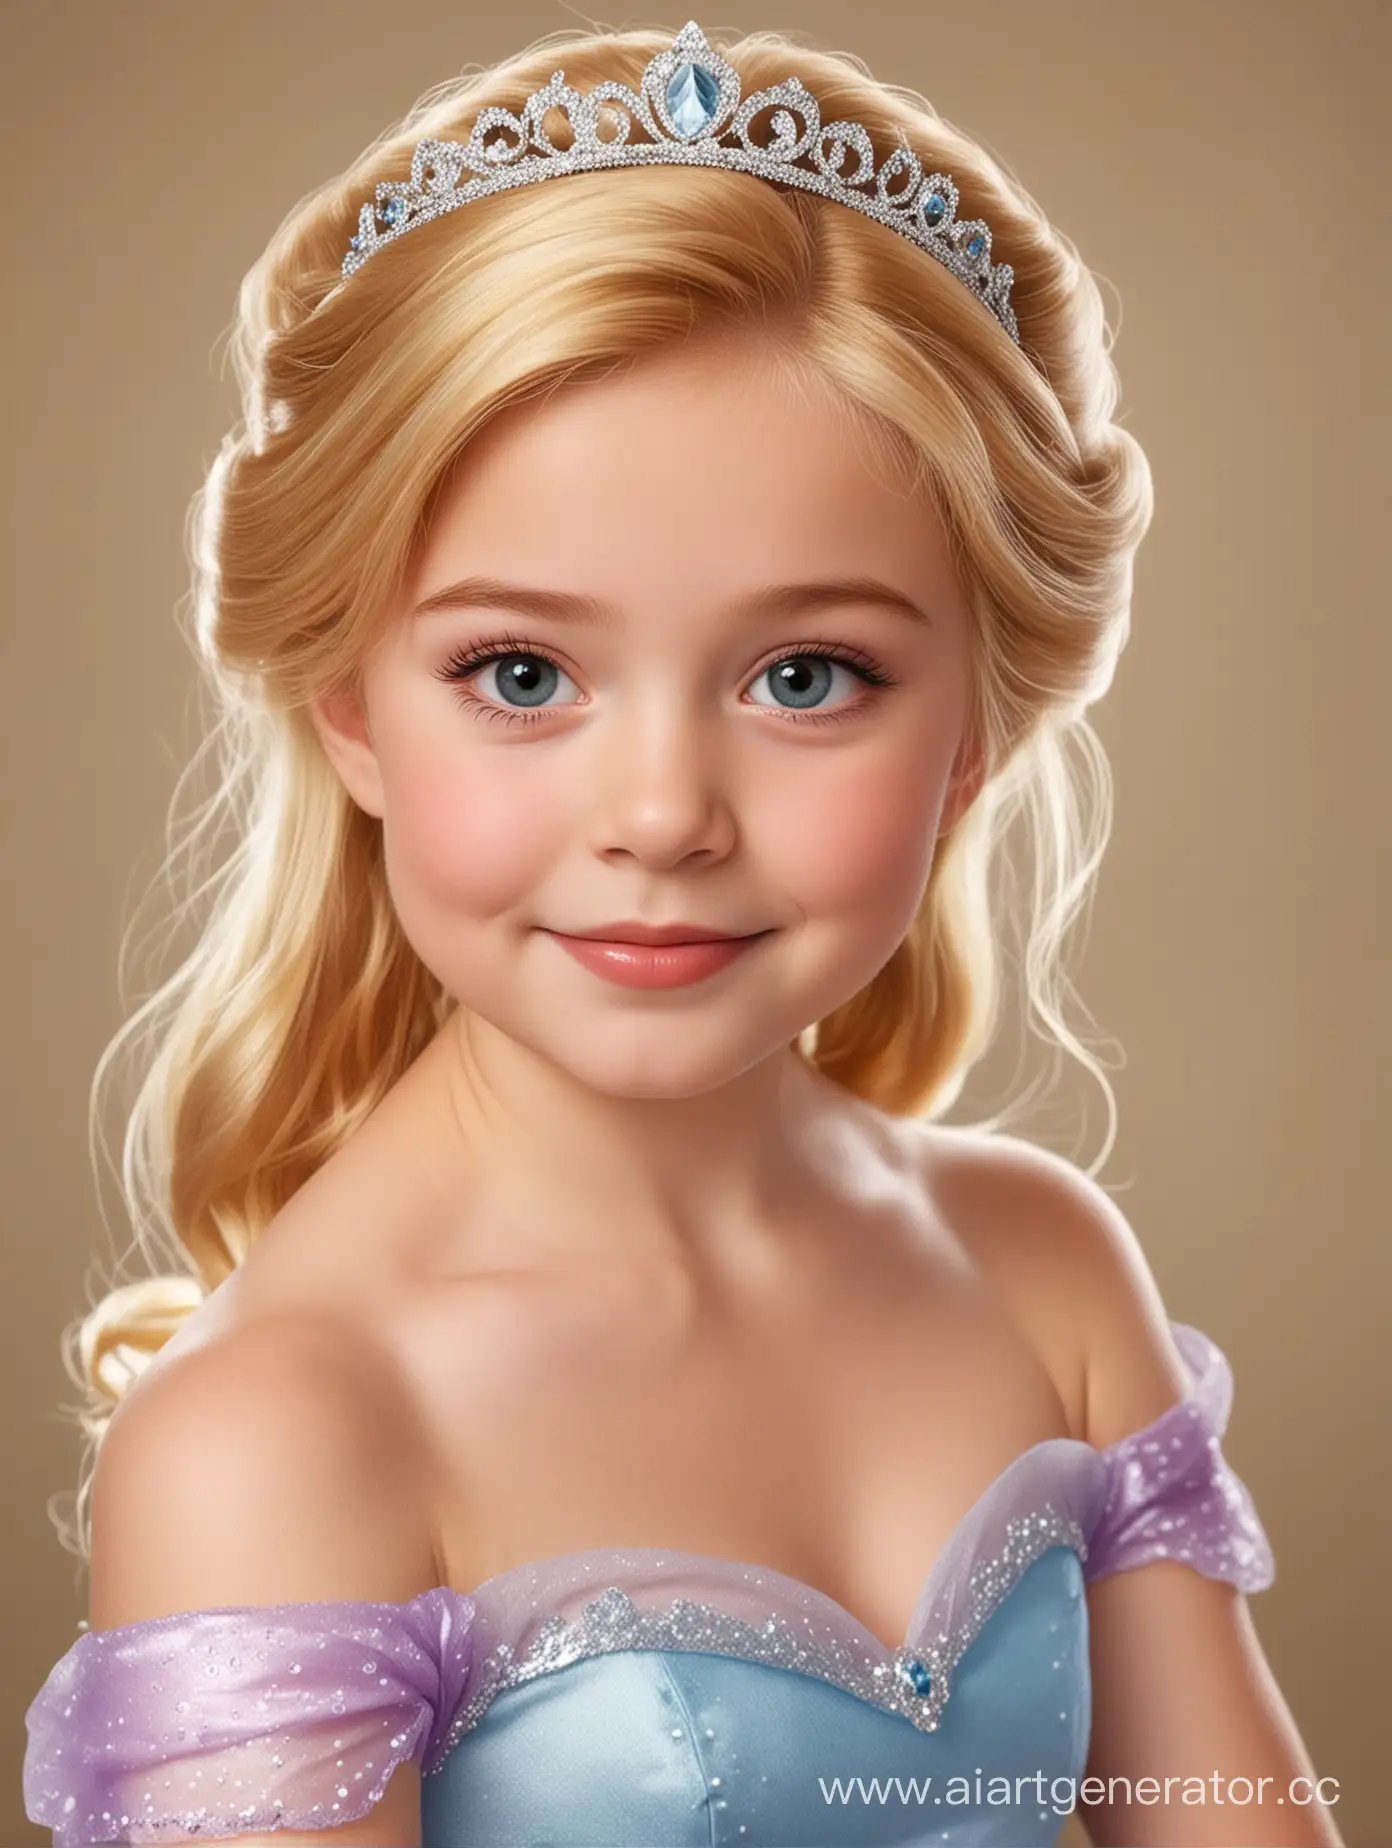 прикрепи лицо ребенка с фото, на диснеевскую принцессу с мультфильмов, изображение  должно быть в полный рост
